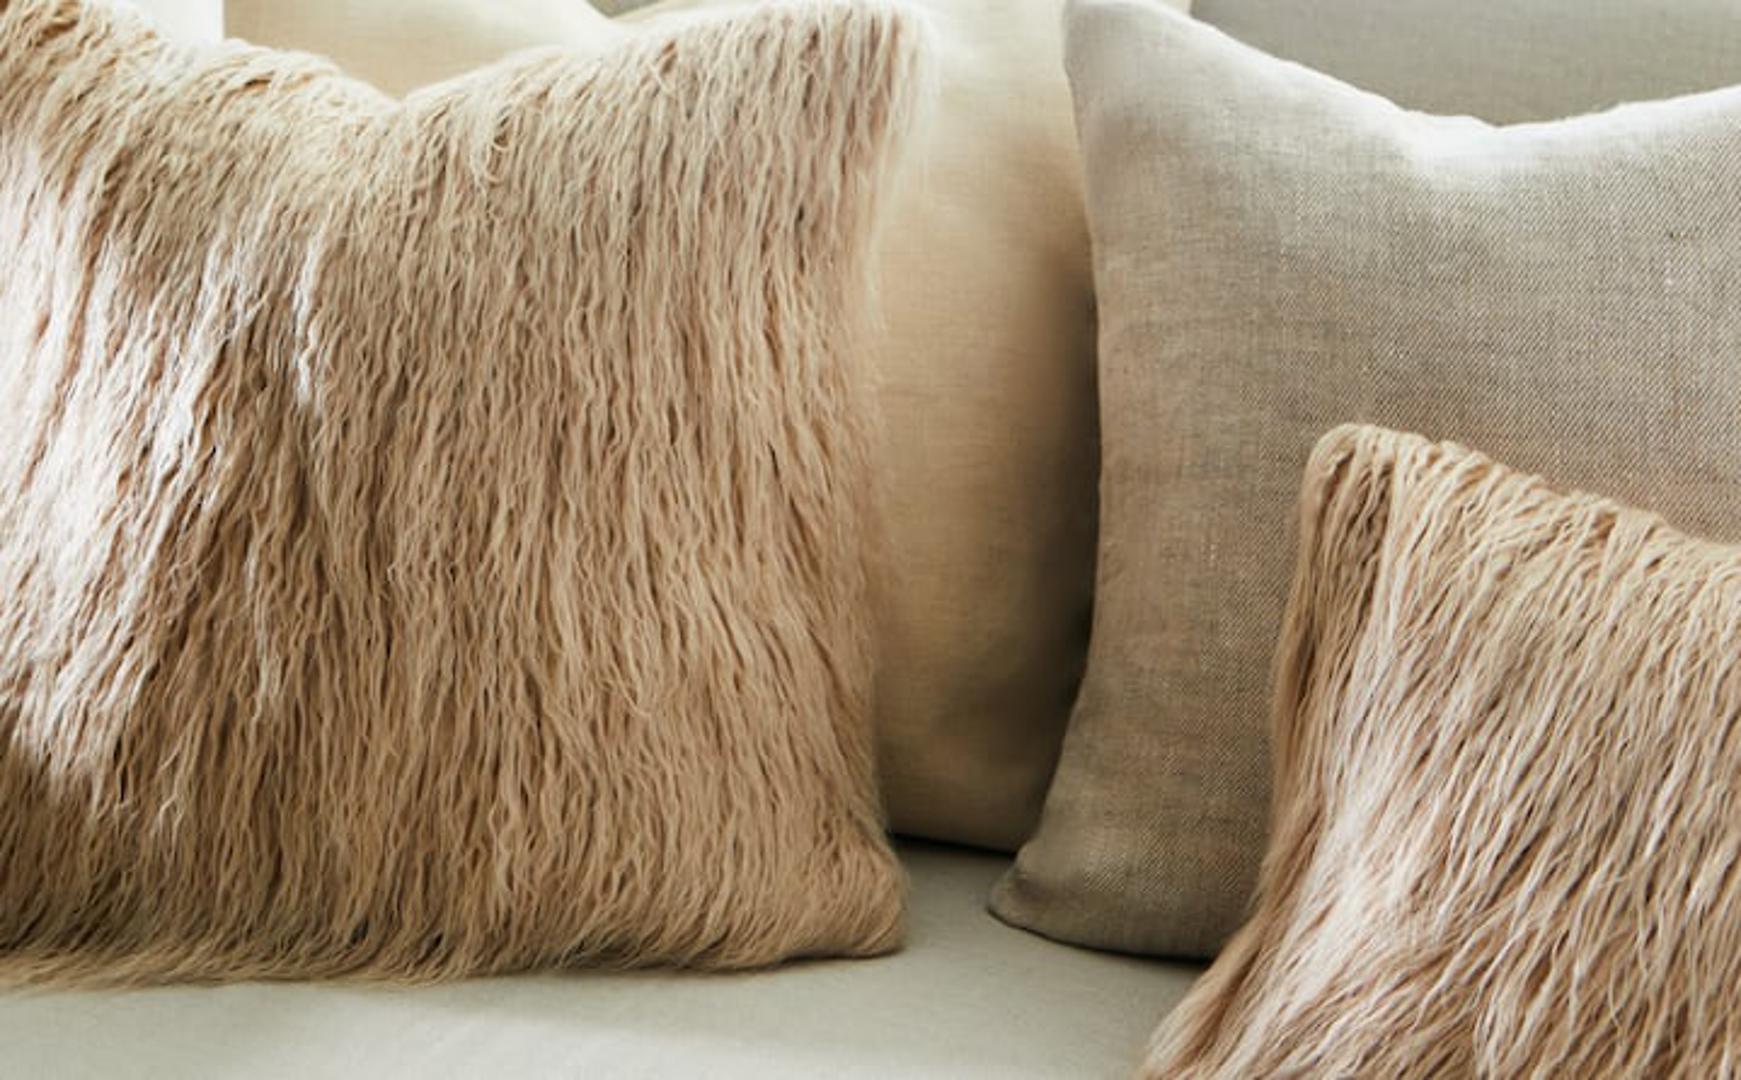 Ako volite različite teksture ovi jastuci bit će pun pogodak!